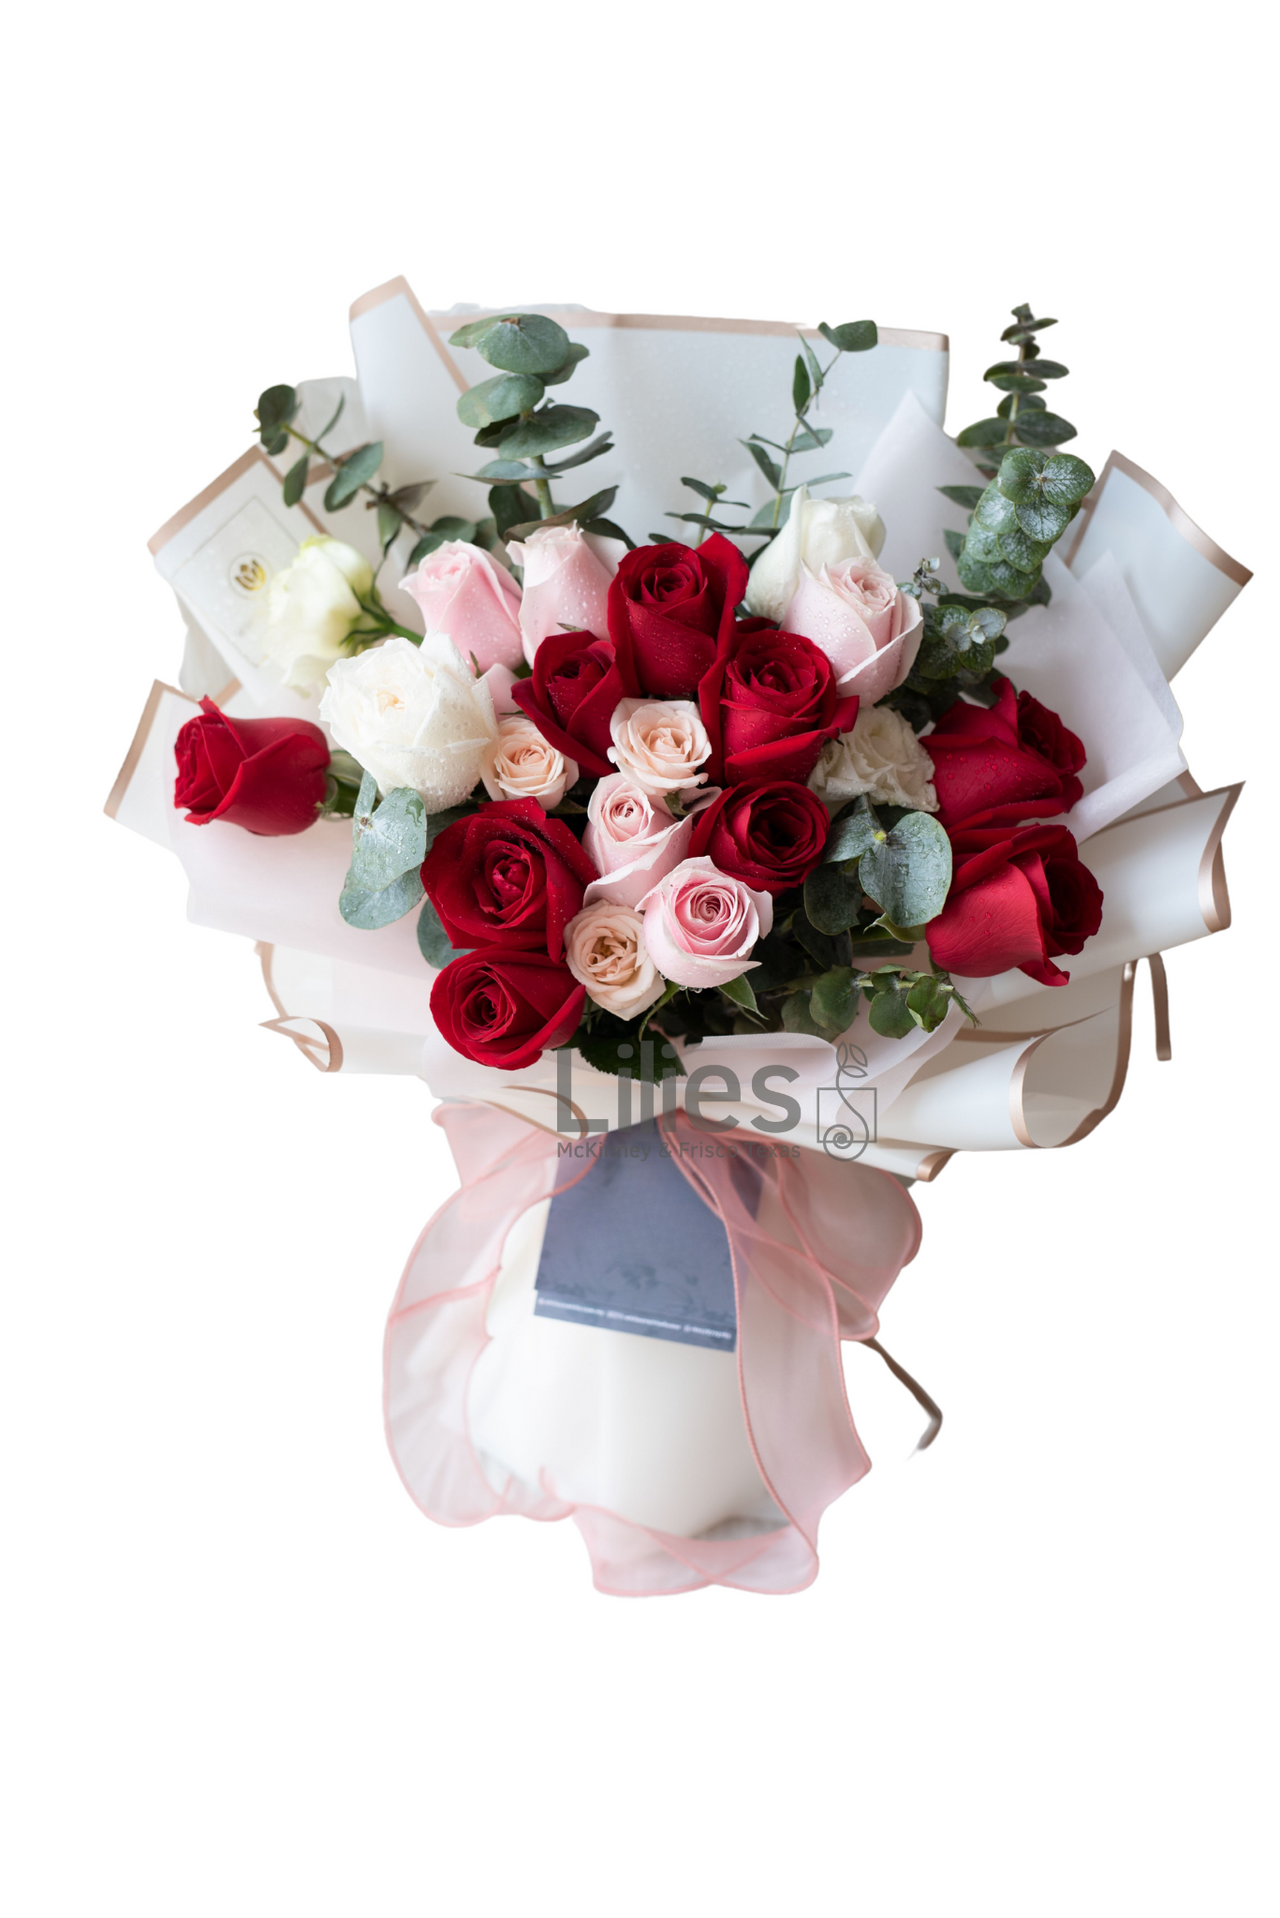 Proposal Bouquets